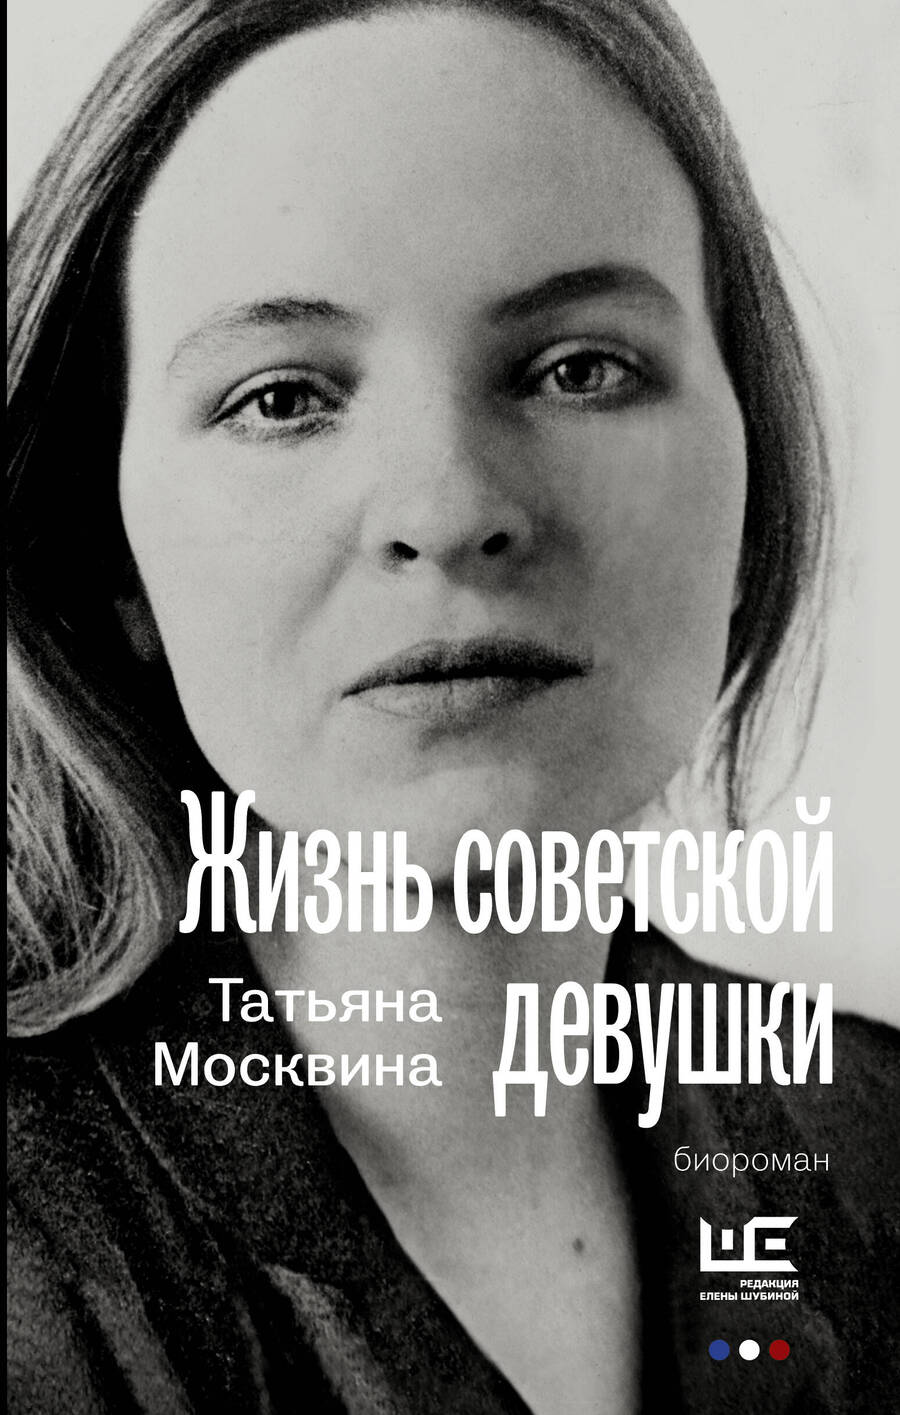 Обложка книги "Москвина: Жизнь советской девушки"